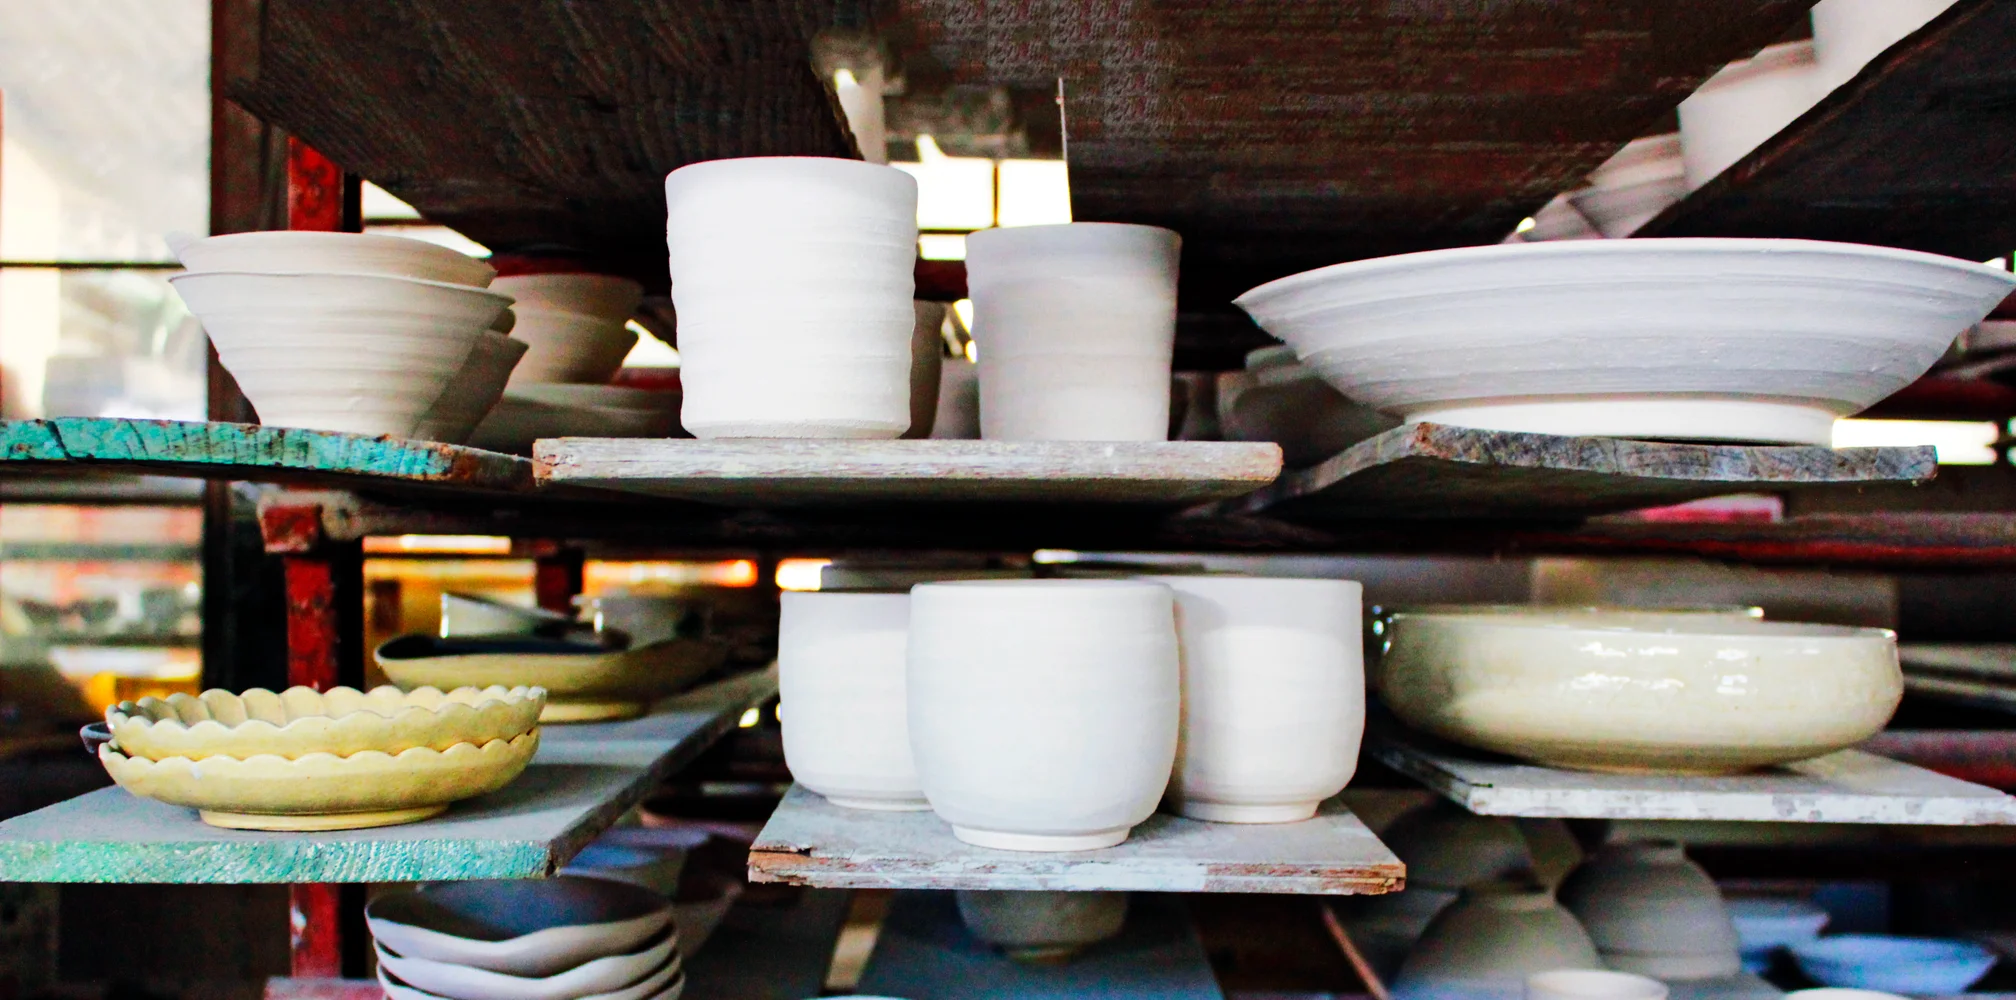 Mino Ware Pottery Making in Tajimi City, Gifu Prefecture